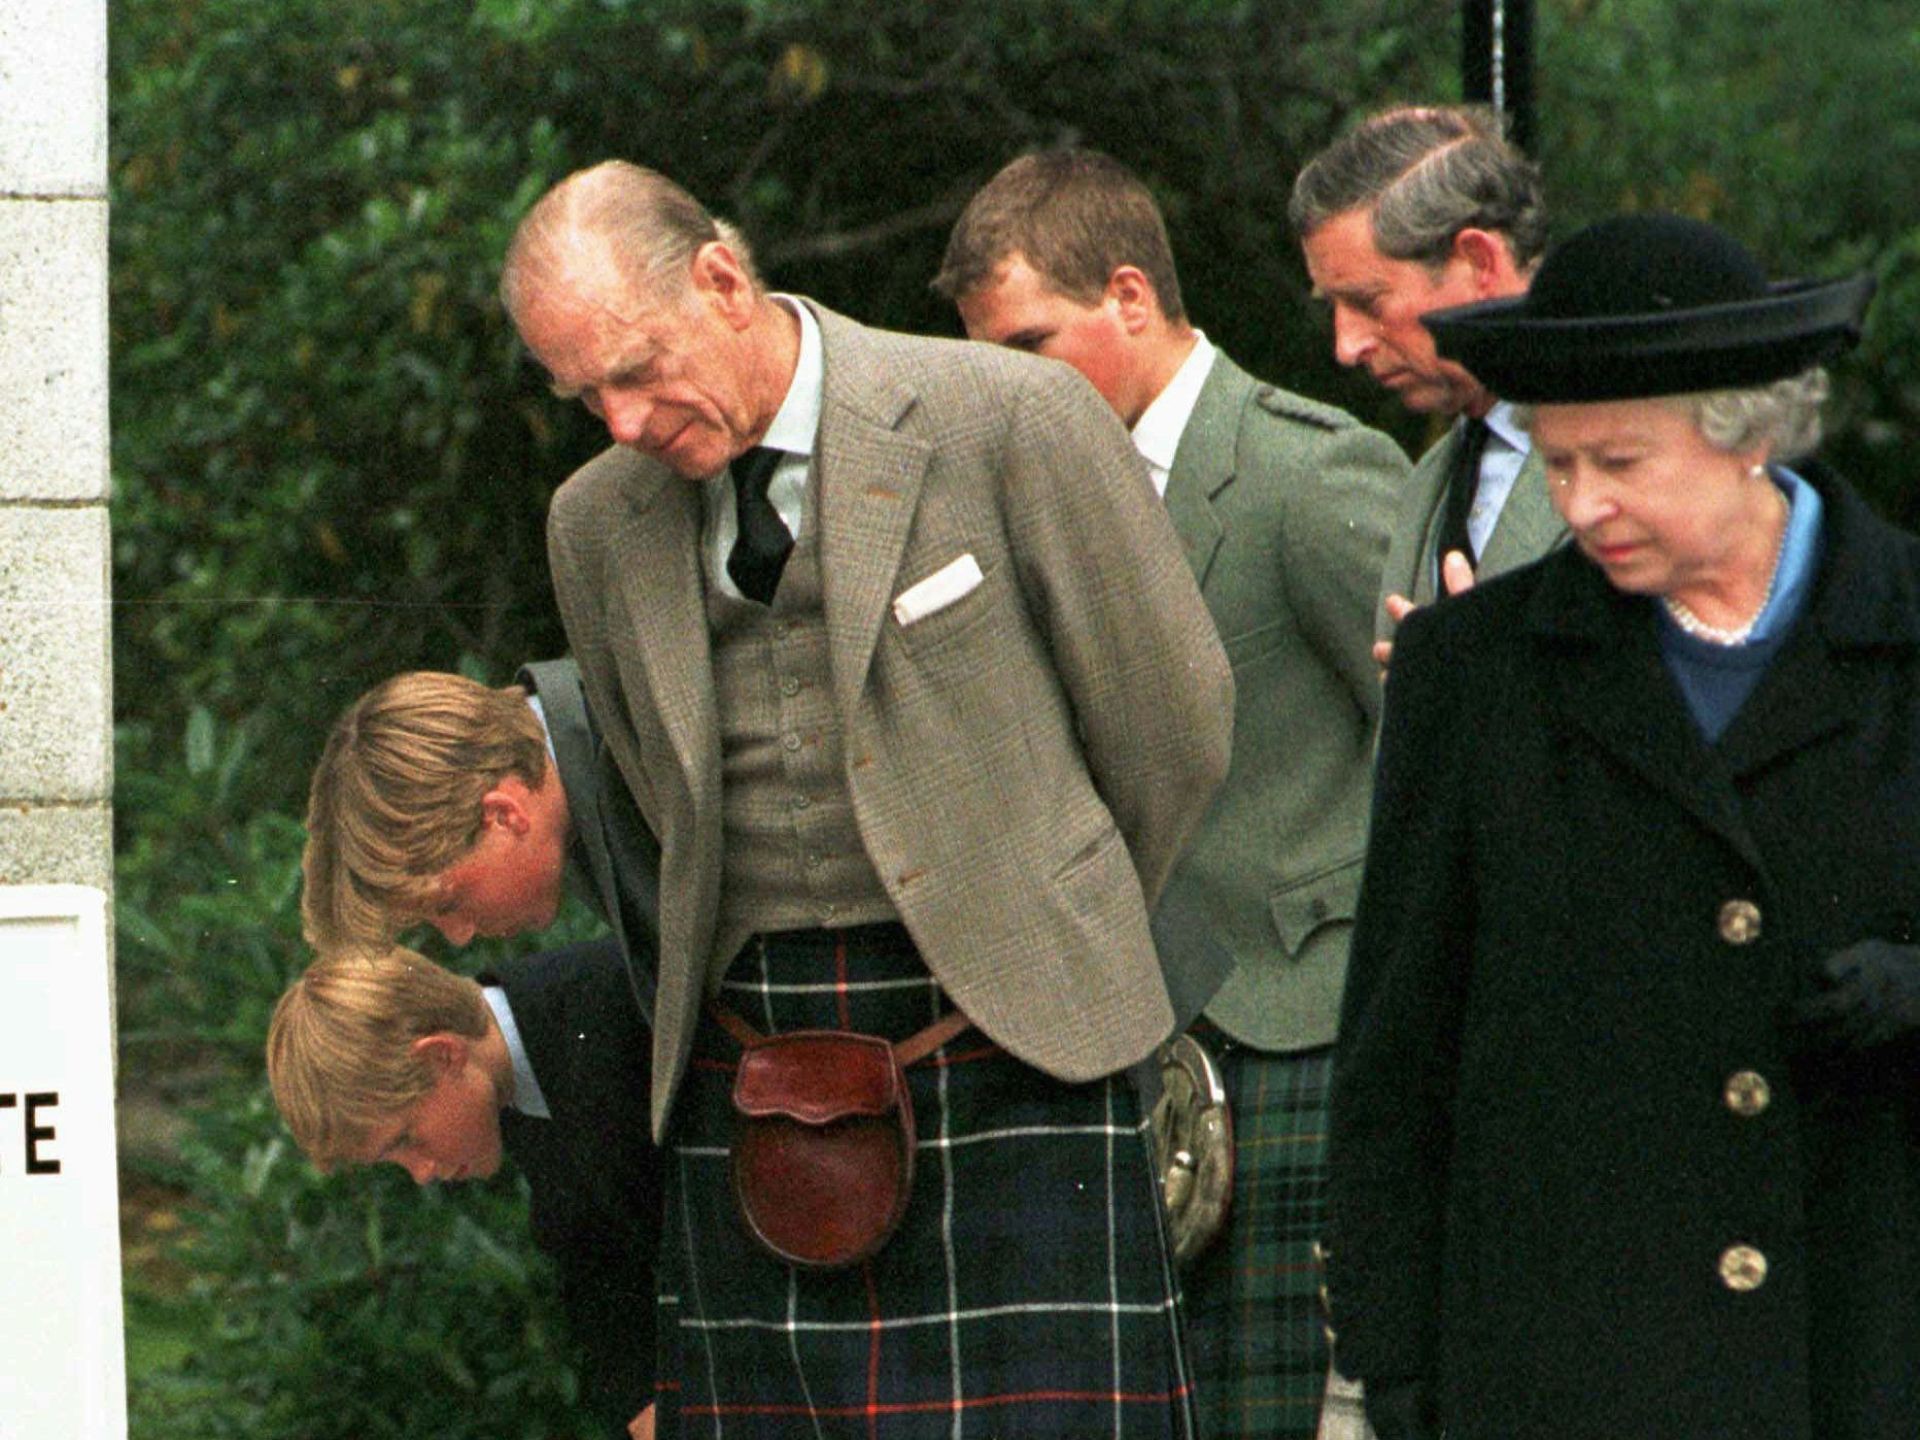 Nữ hoàng từng bị dân chúng chỉ trích vì làm ngơ trước cái chết đầy bí ẩn của Công nương Diana nhưng khoảnh khắc này đã hóa giải ngờ vực - Ảnh 3.